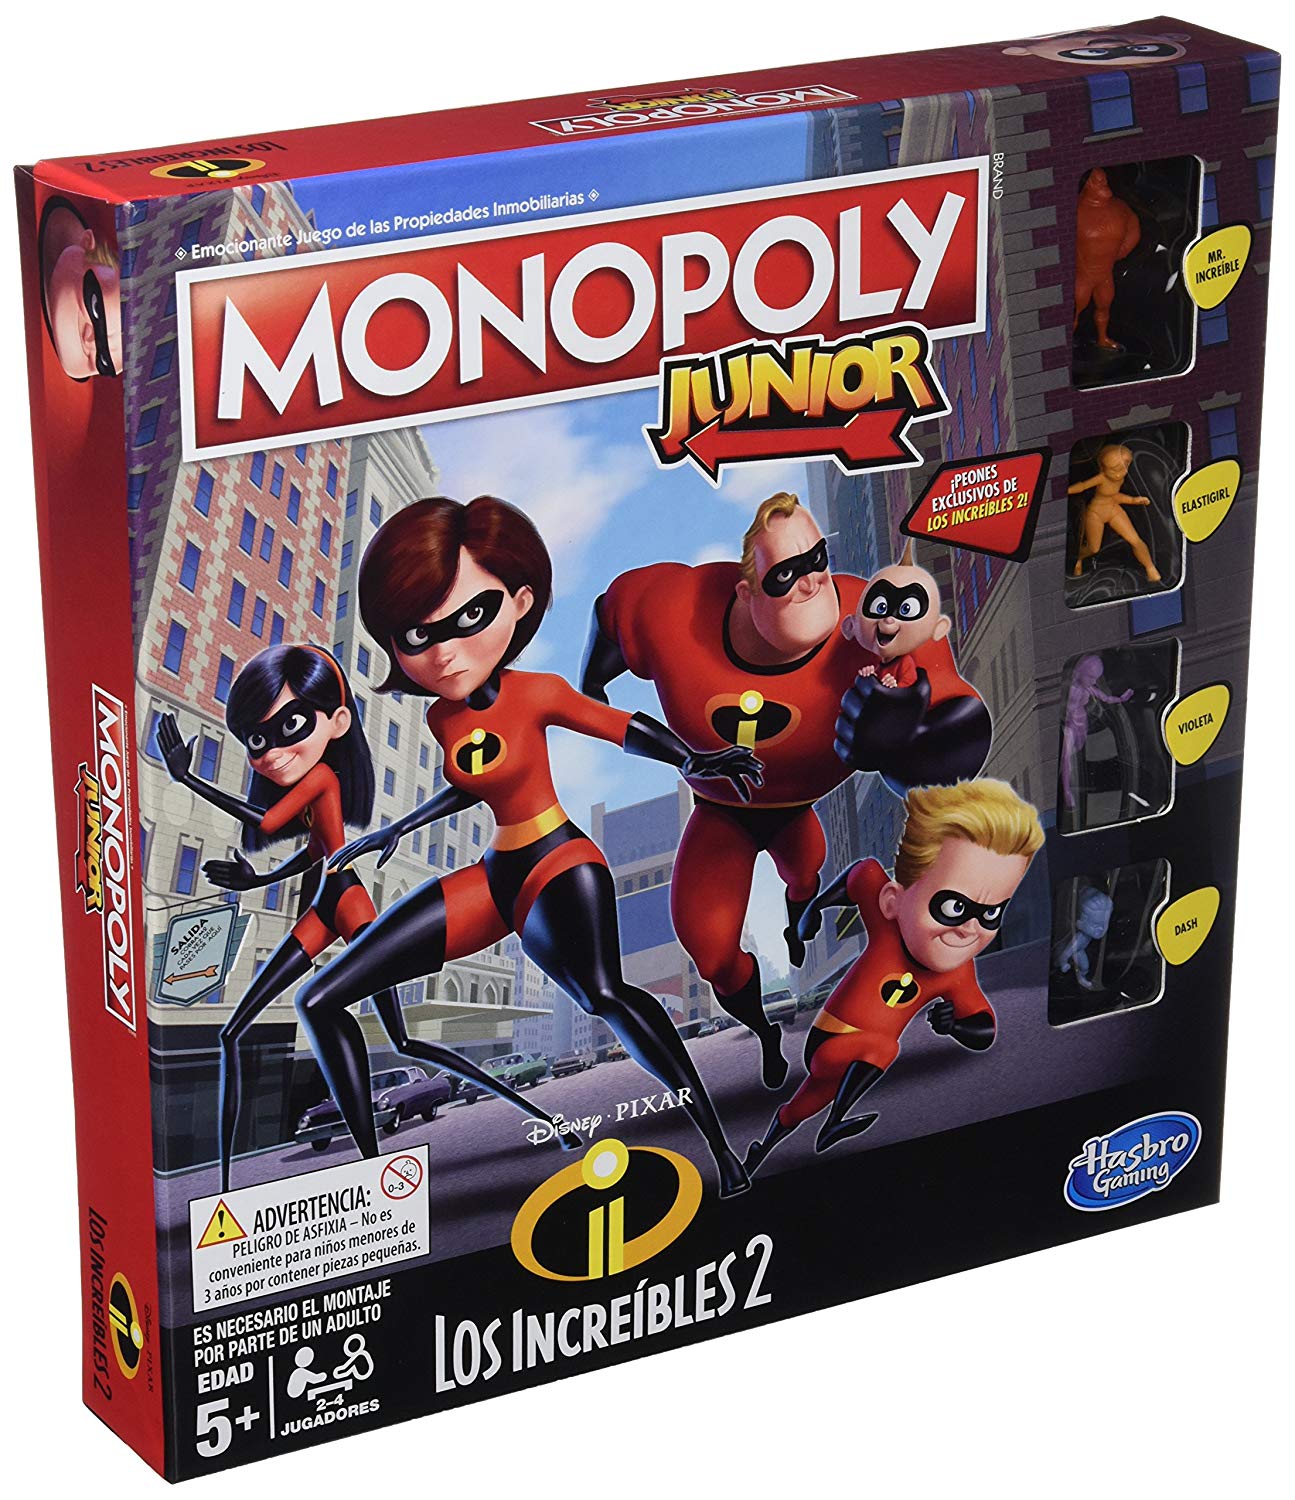 Monopoly Junior Increibles solo 13,2€